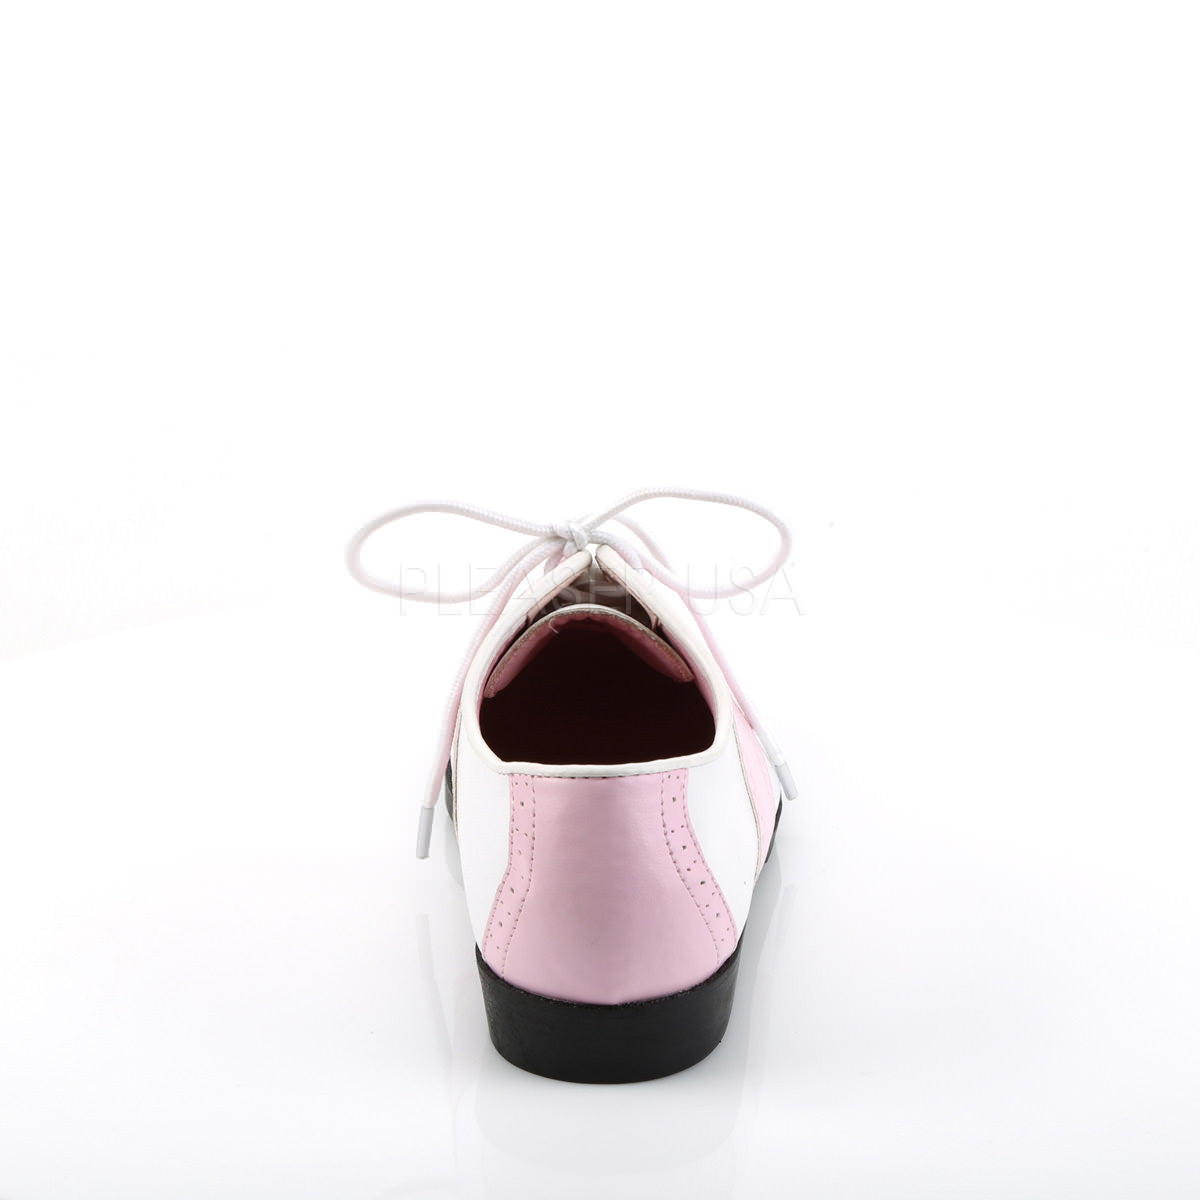 Funtasma SADDLE-50 Baby Pink-White Pu Saddle Shoes